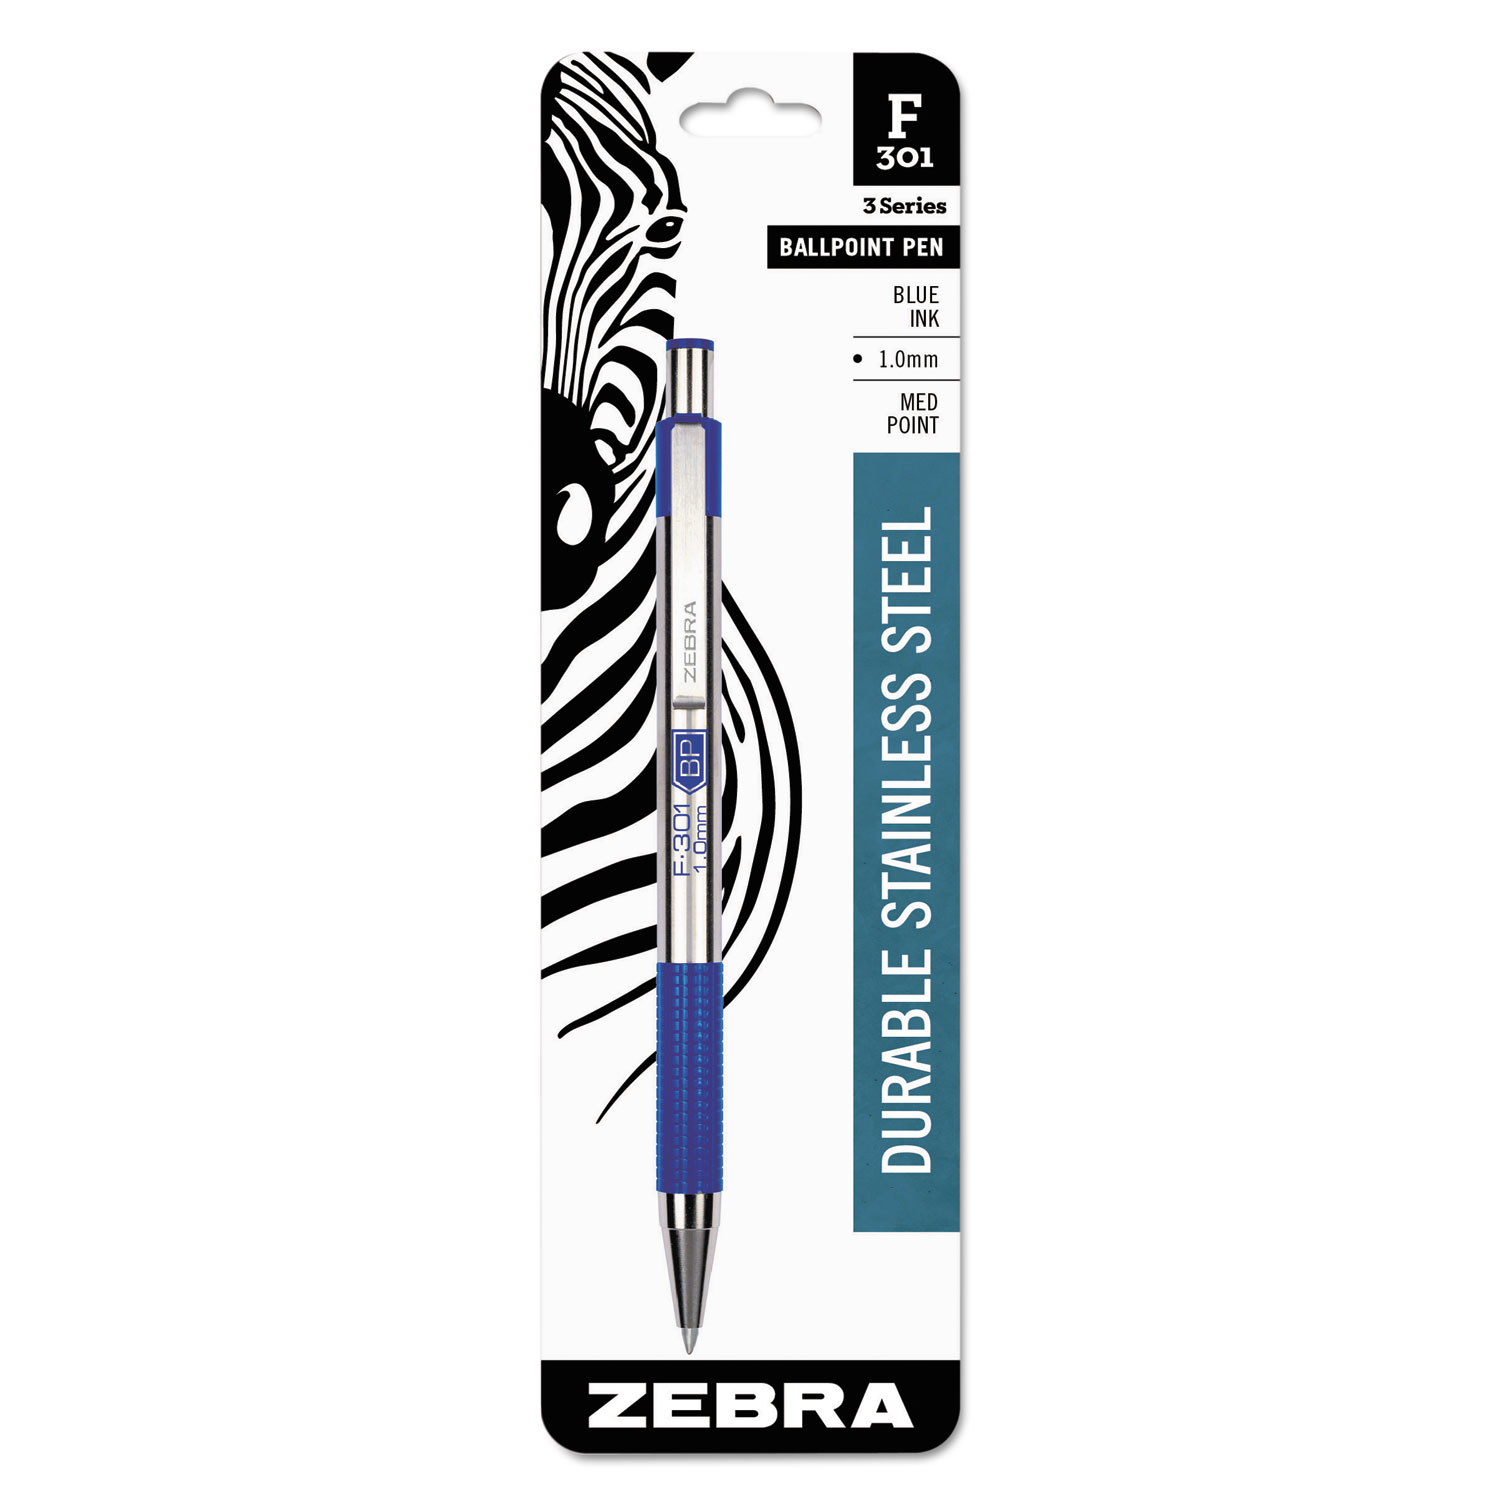 F-301 Ballpoint Retractable Pen, Blue Ink, Medium